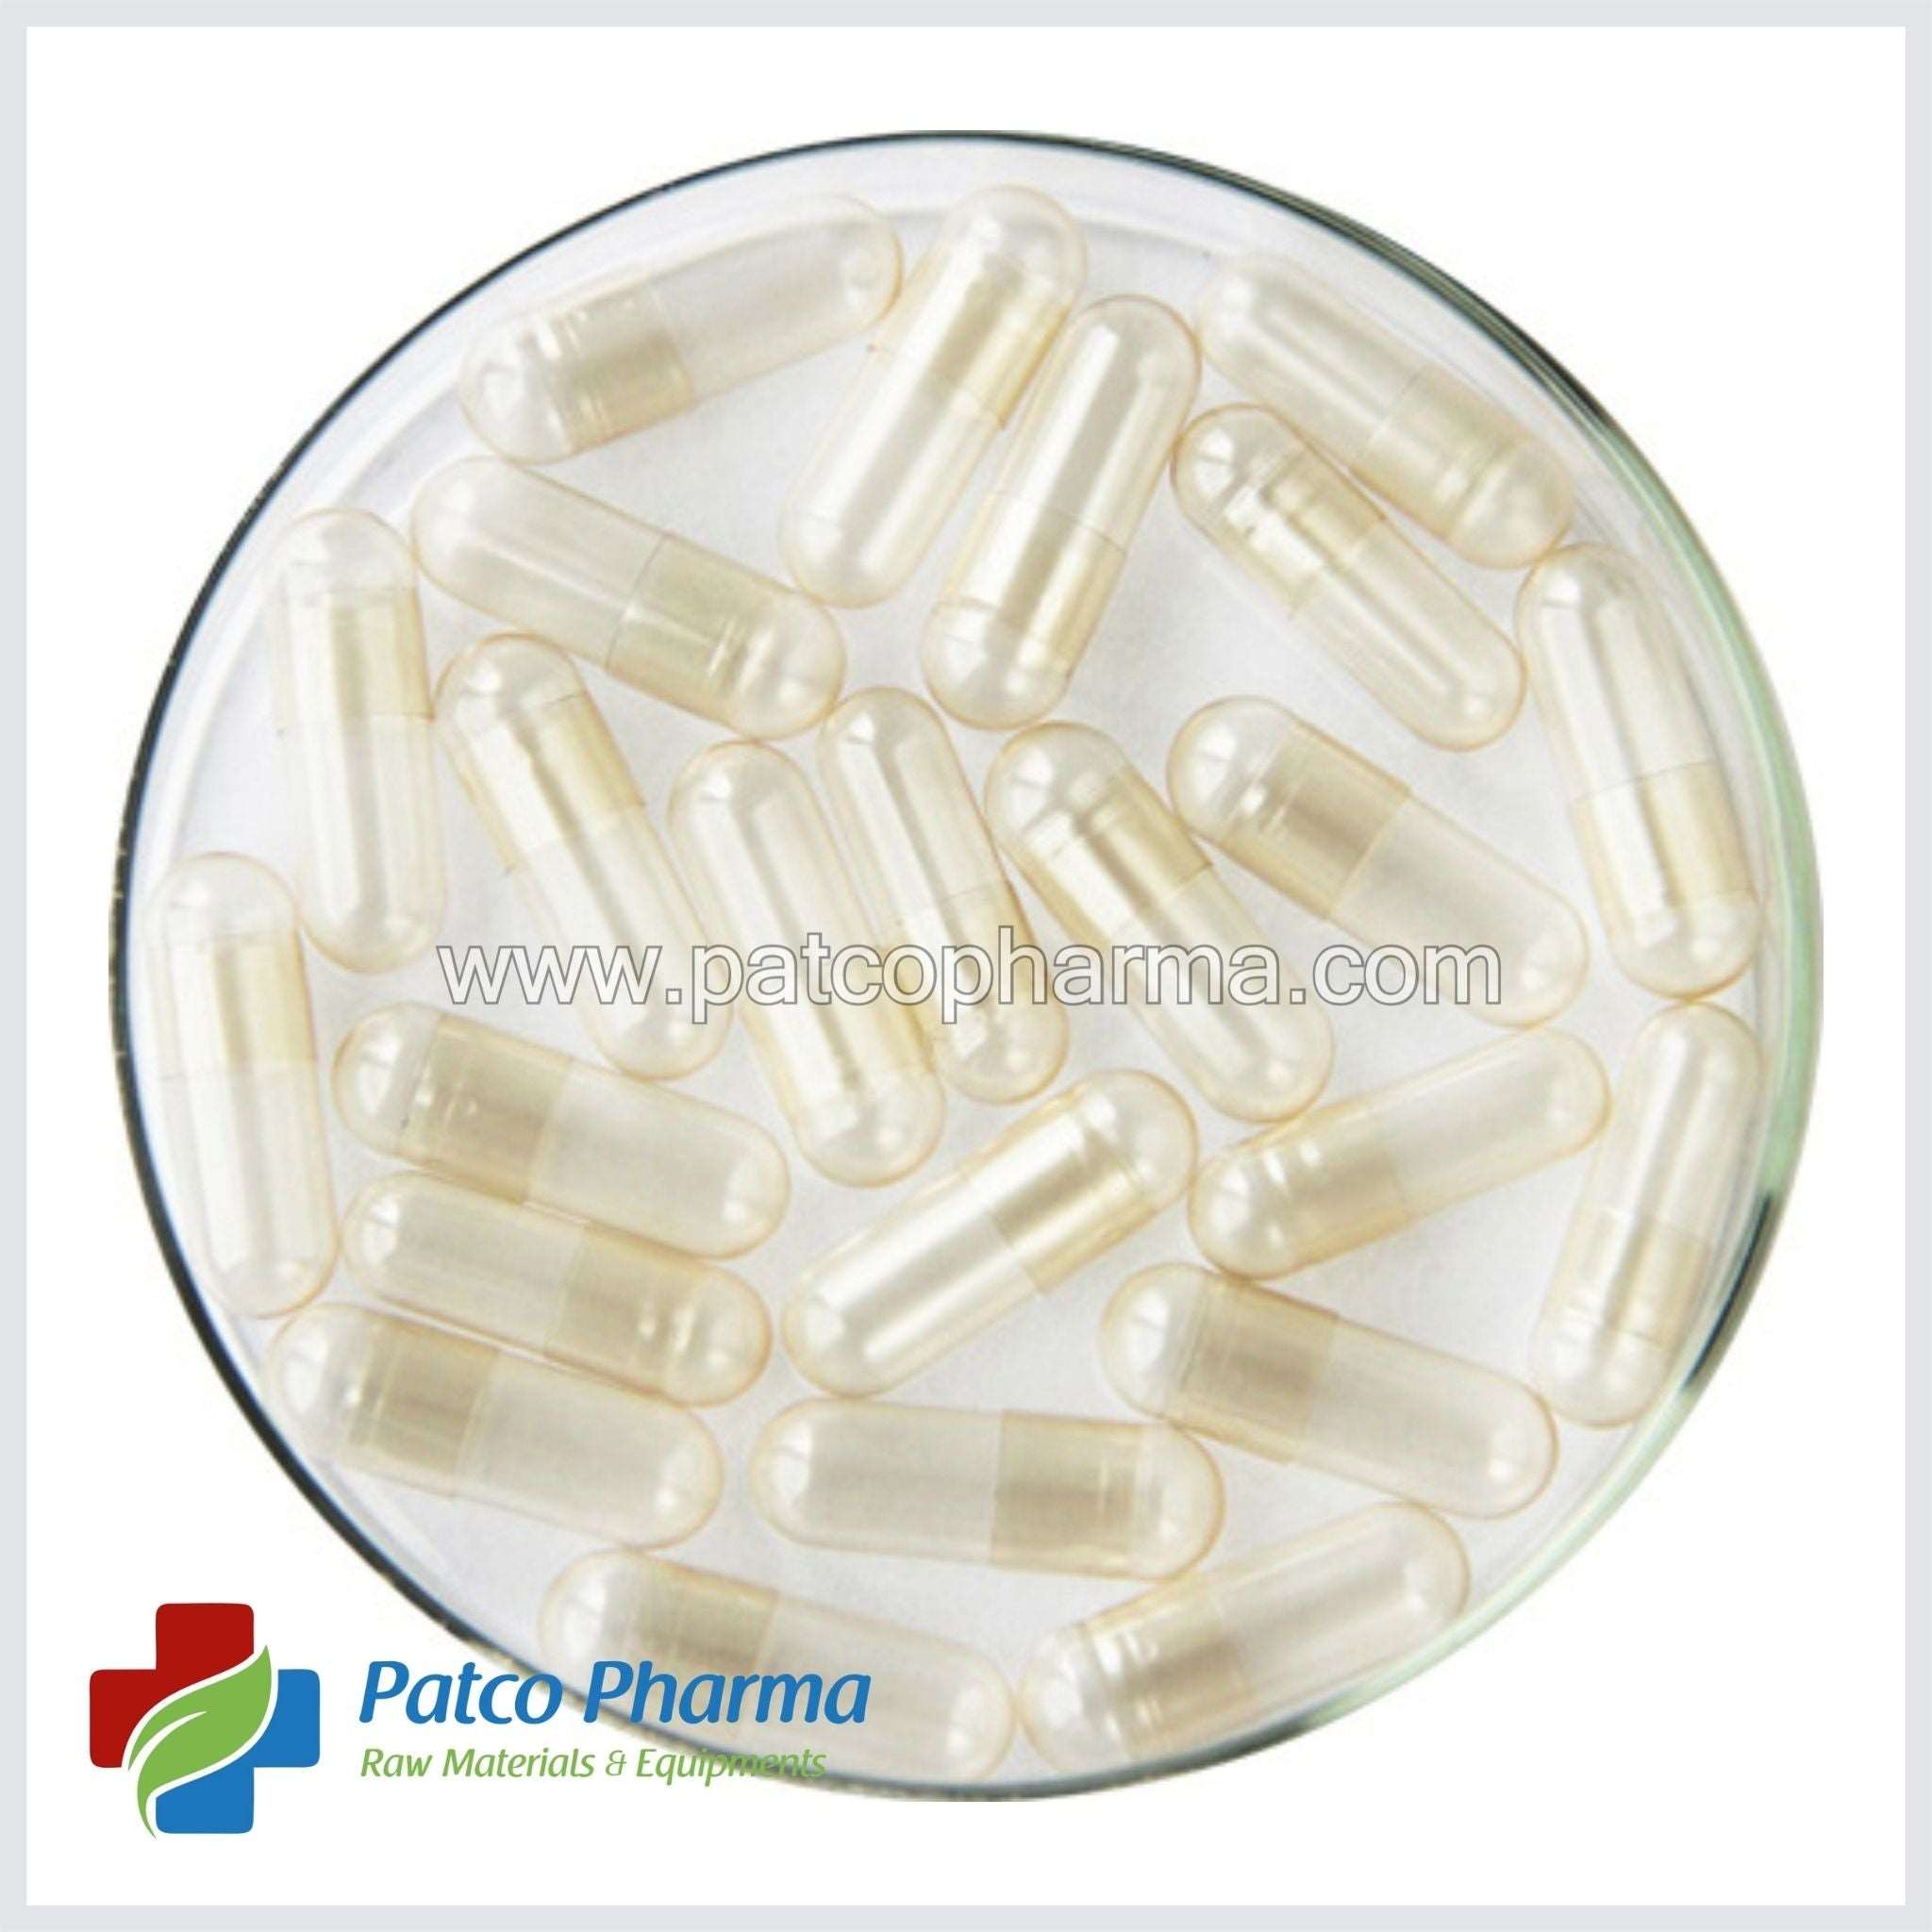 Empty Gelatin Capsule - Size 00, Patco Pharma, Gelatin Capsules, empty-gelatin-capsule-size-00, 1000 mg capsule, Gelatin Capsule, Size 00 Capsule, Patco Pharma